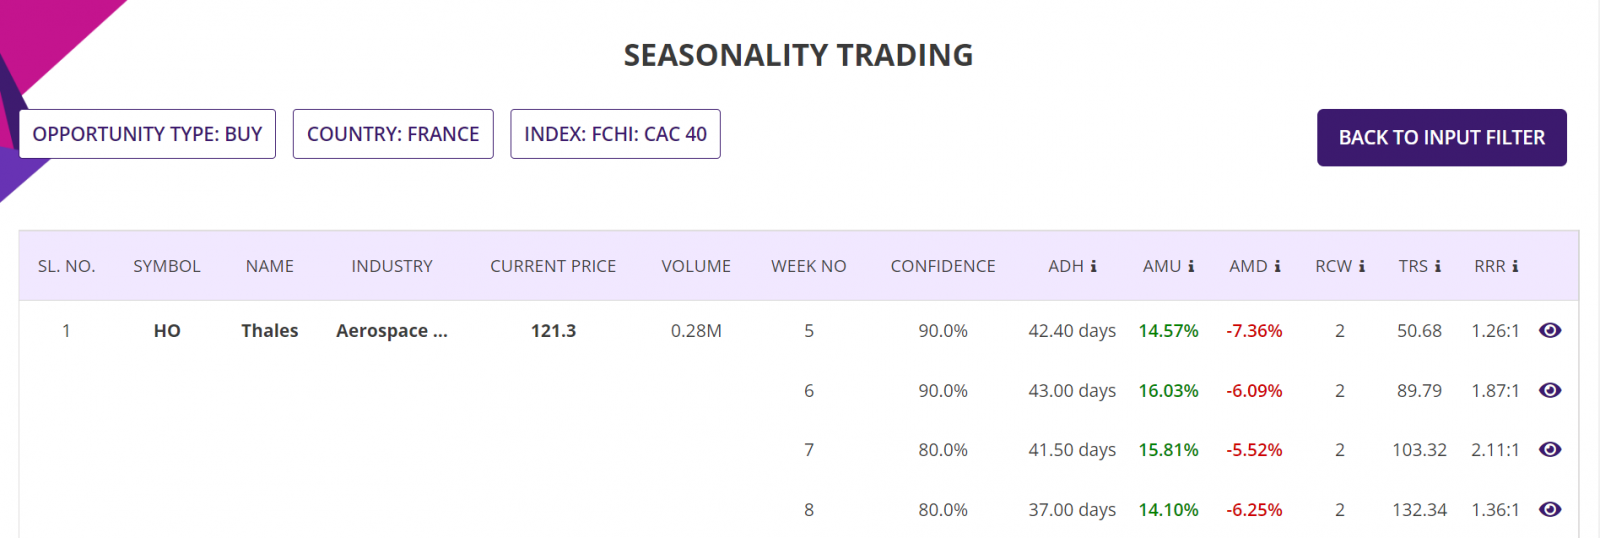 Seasonality trading strategy, summary report, CAC 40 Stocks